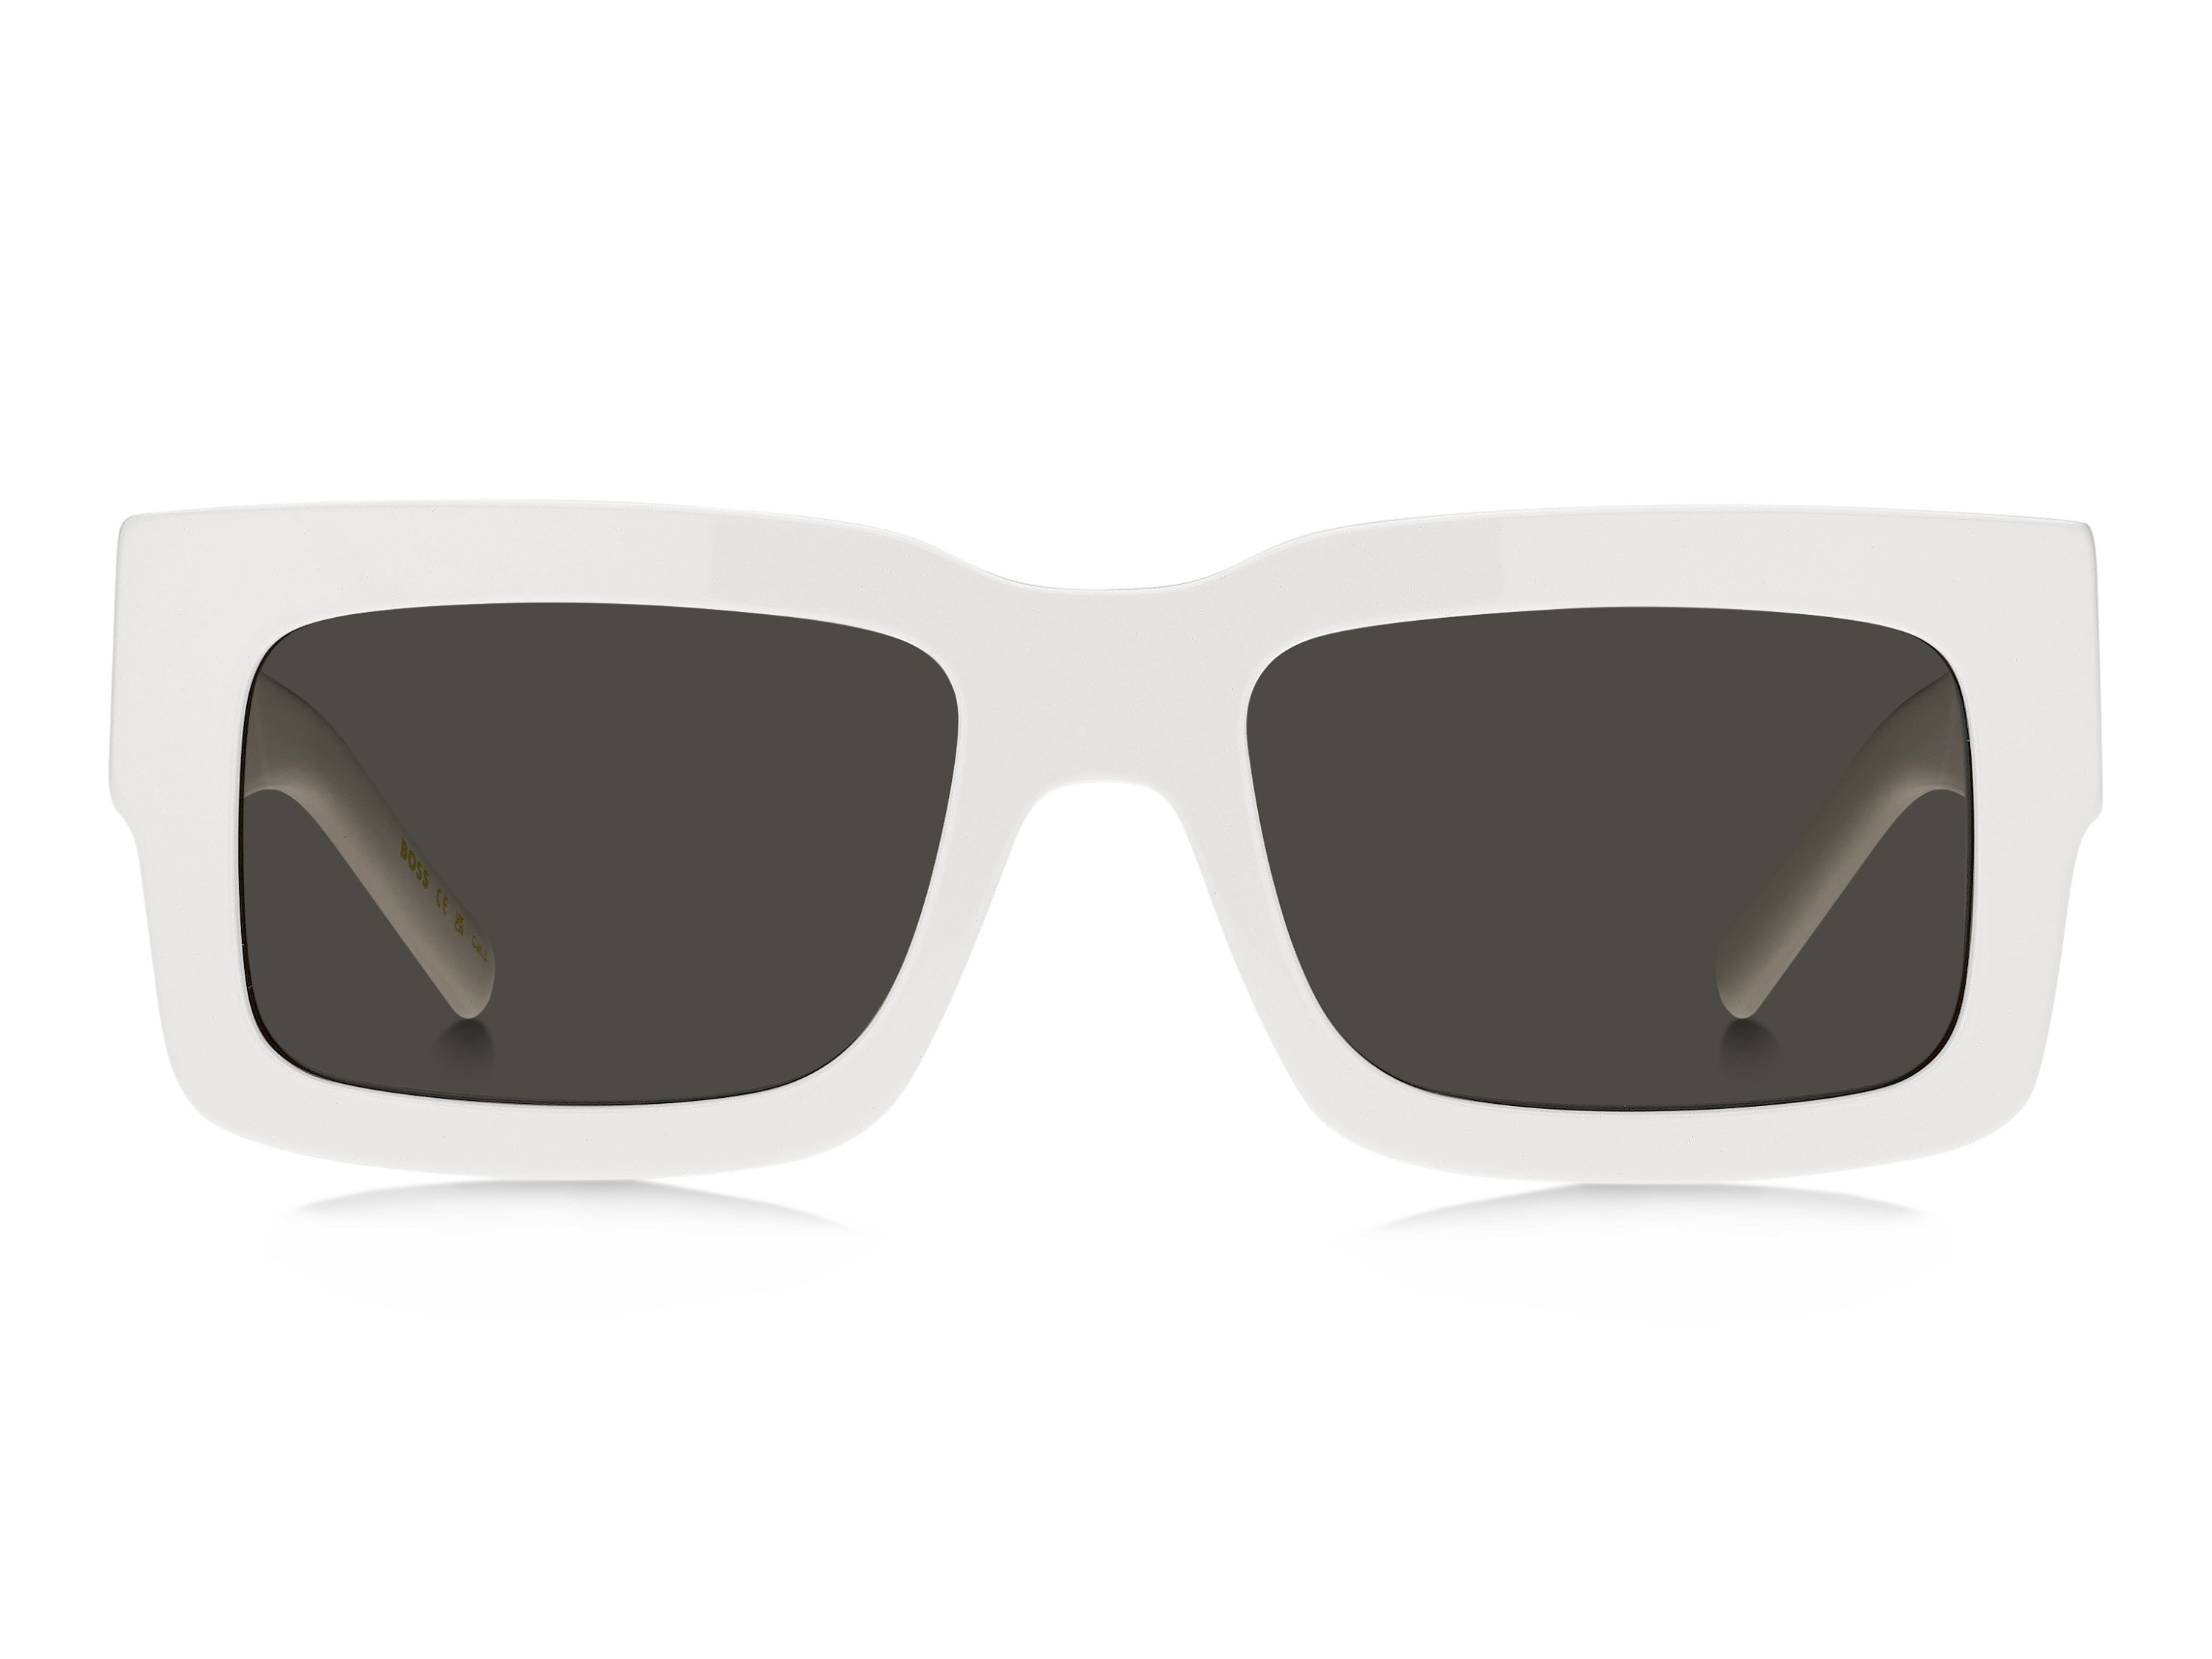 Das Bild zeigt die Sonnenbrille BOSS1654S VK6 von der Marke BOSS in Weiß.